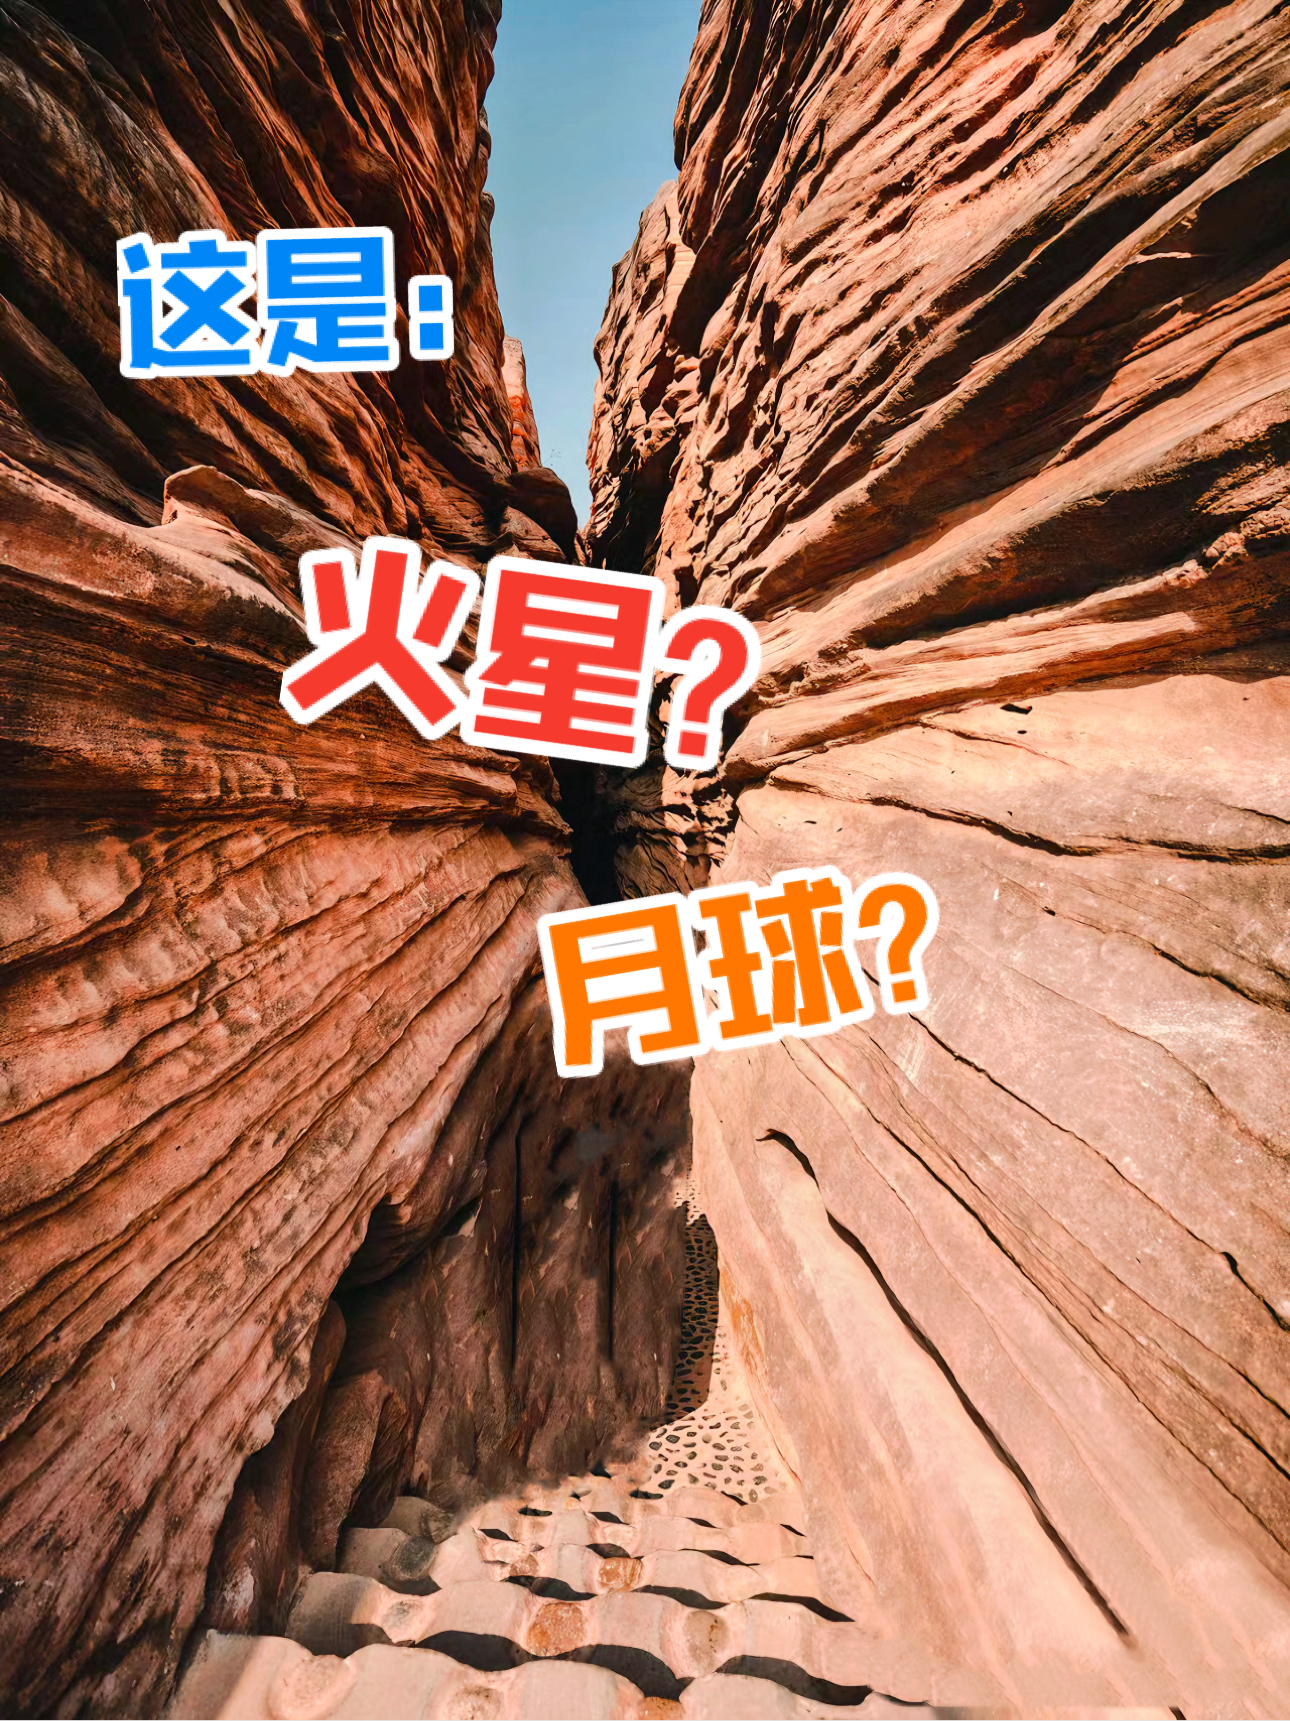 我敢肯定：这里不是美国“羚羊峡谷”，这是中国的“洞峡群”！！